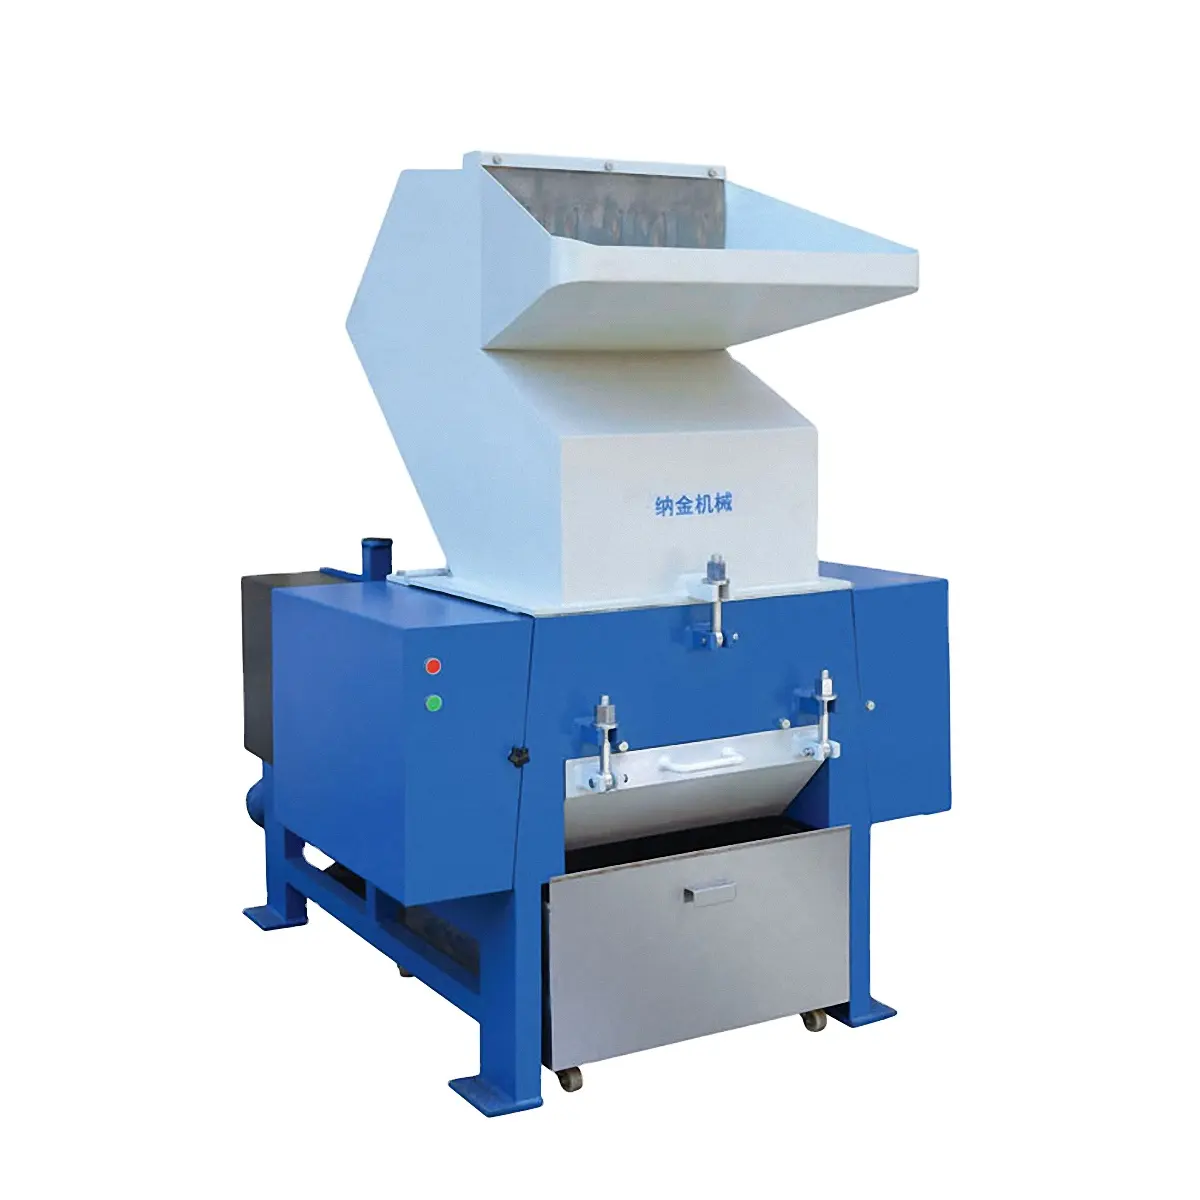 Máquina trituradora de plástico para reciclaje, trituradora de papel industrial de fábrica, china, 30HP